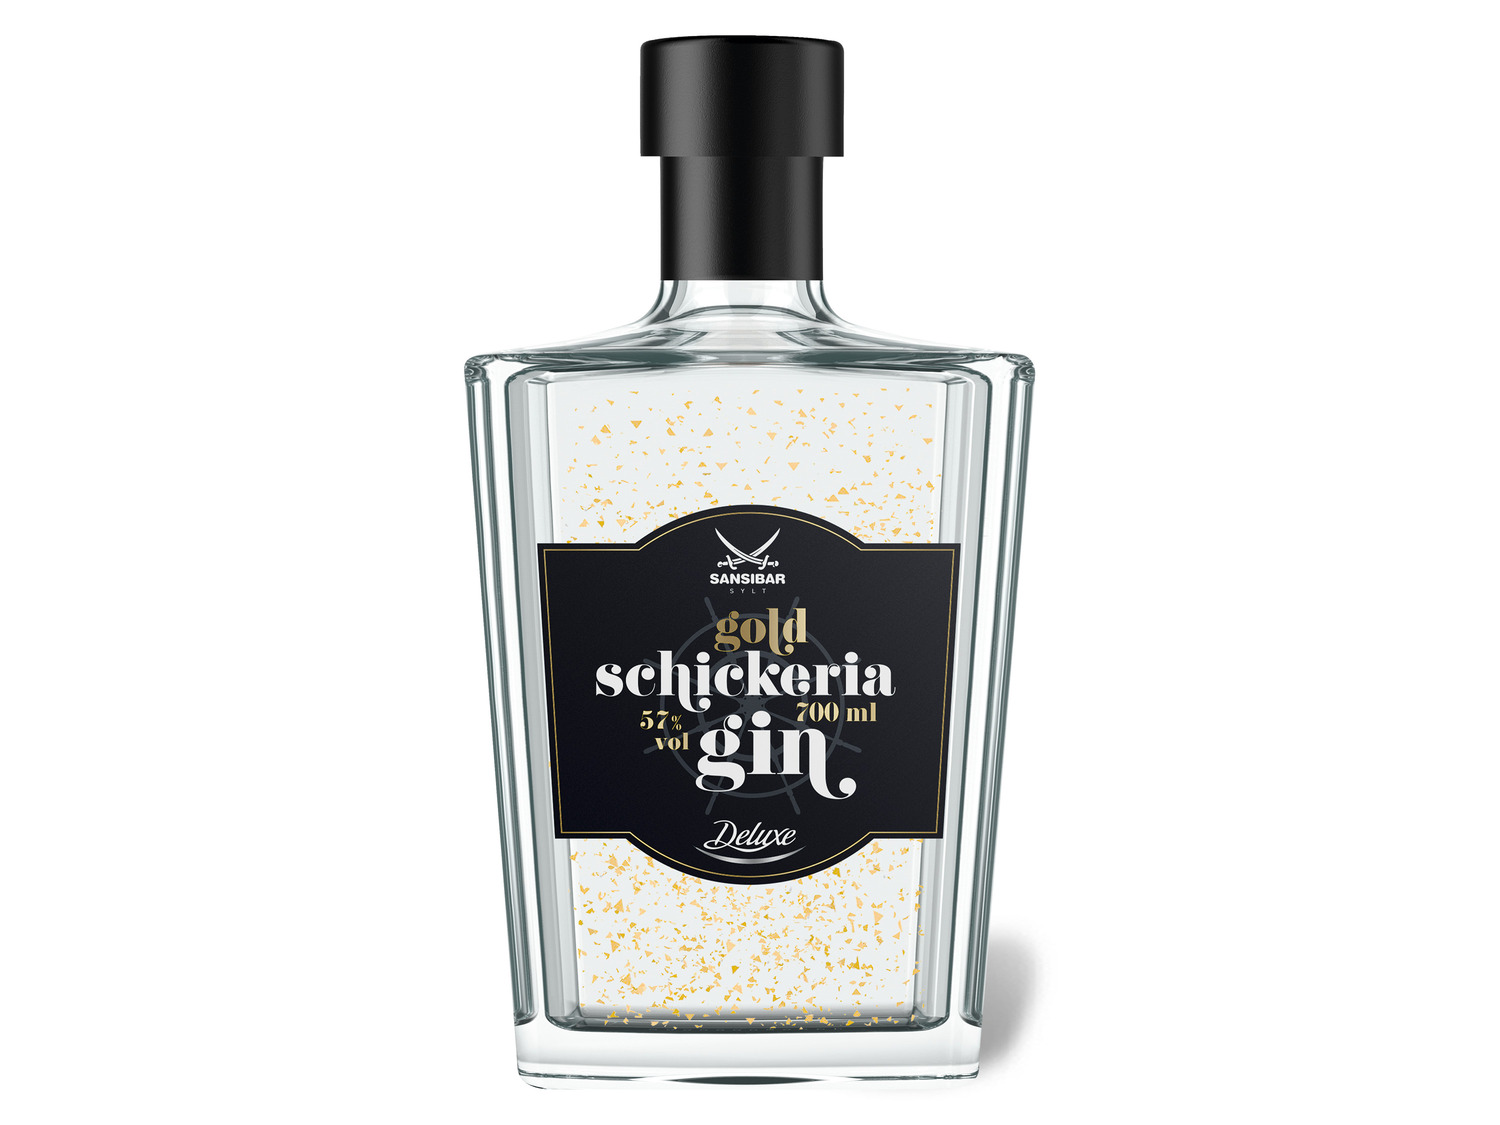 Sansibar Deluxe Schickeria Gin Gold Vol 57% | LIDL